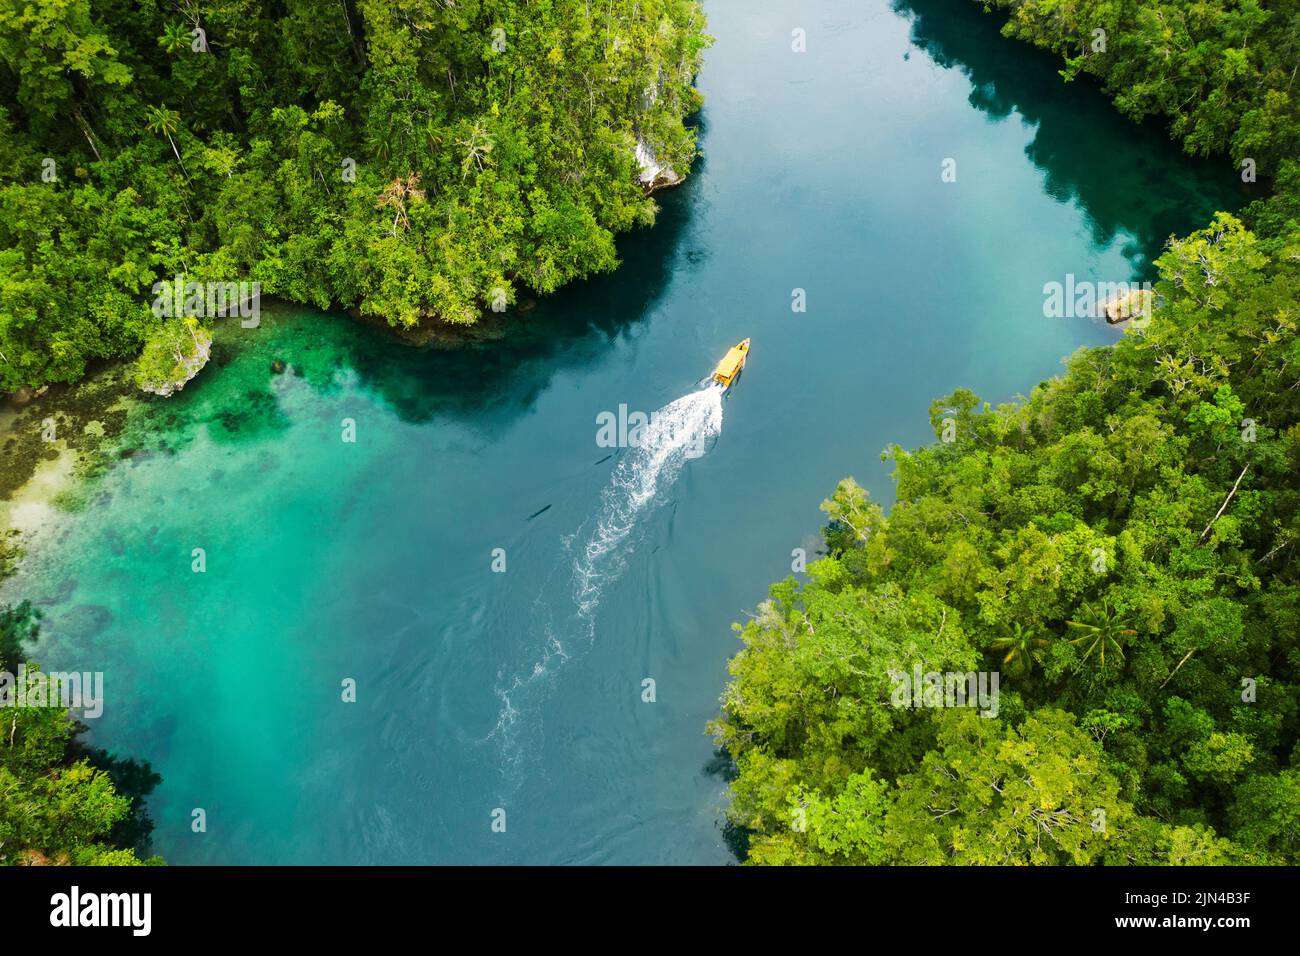 Setzen Sie die Segel und entdecken Sie neue Welten voller Abenteuer. Aufnahme eines Bootes, das durch einen Kanal entlang der Raja Ampat-Inseln in Indonesien segelt. Stockfoto